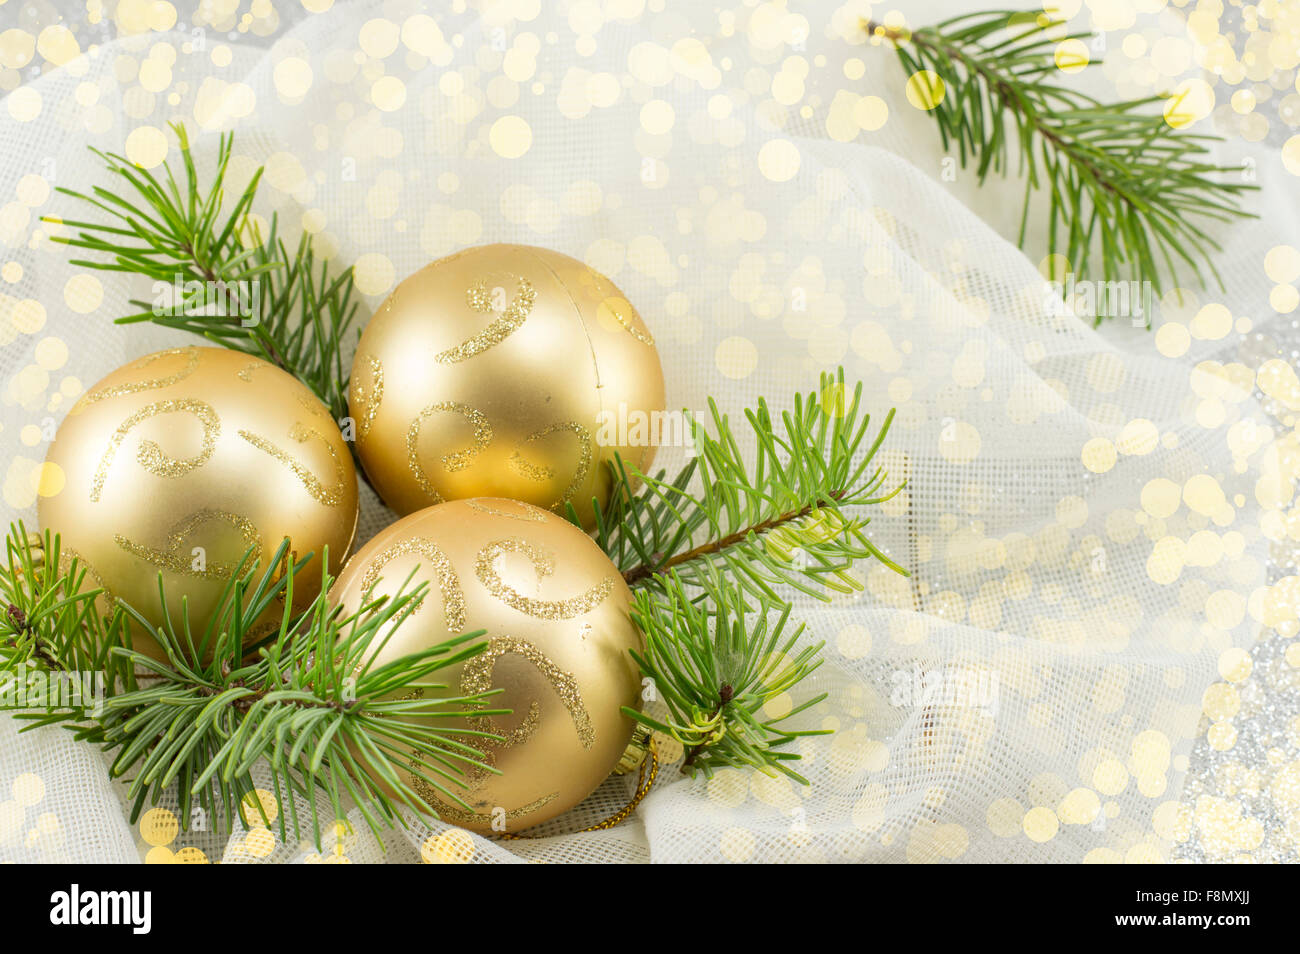 Les boules de Noël de couleur d'or sur une branche de sapin Banque D'Images